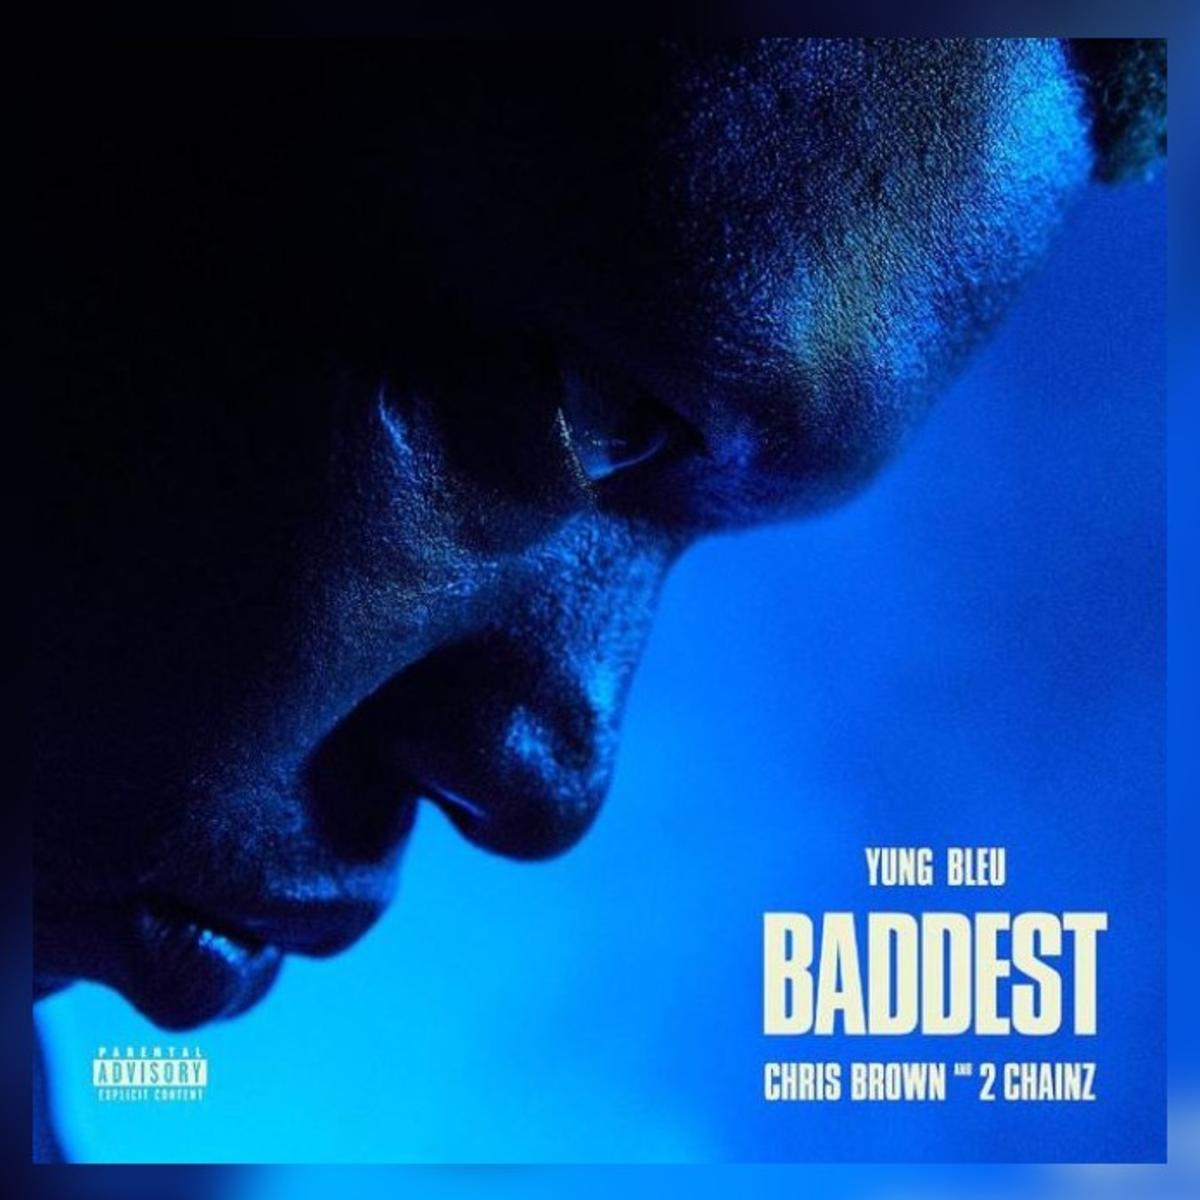 Yung Bleu, Chris Brown & 2 Chainz - Baddest 1